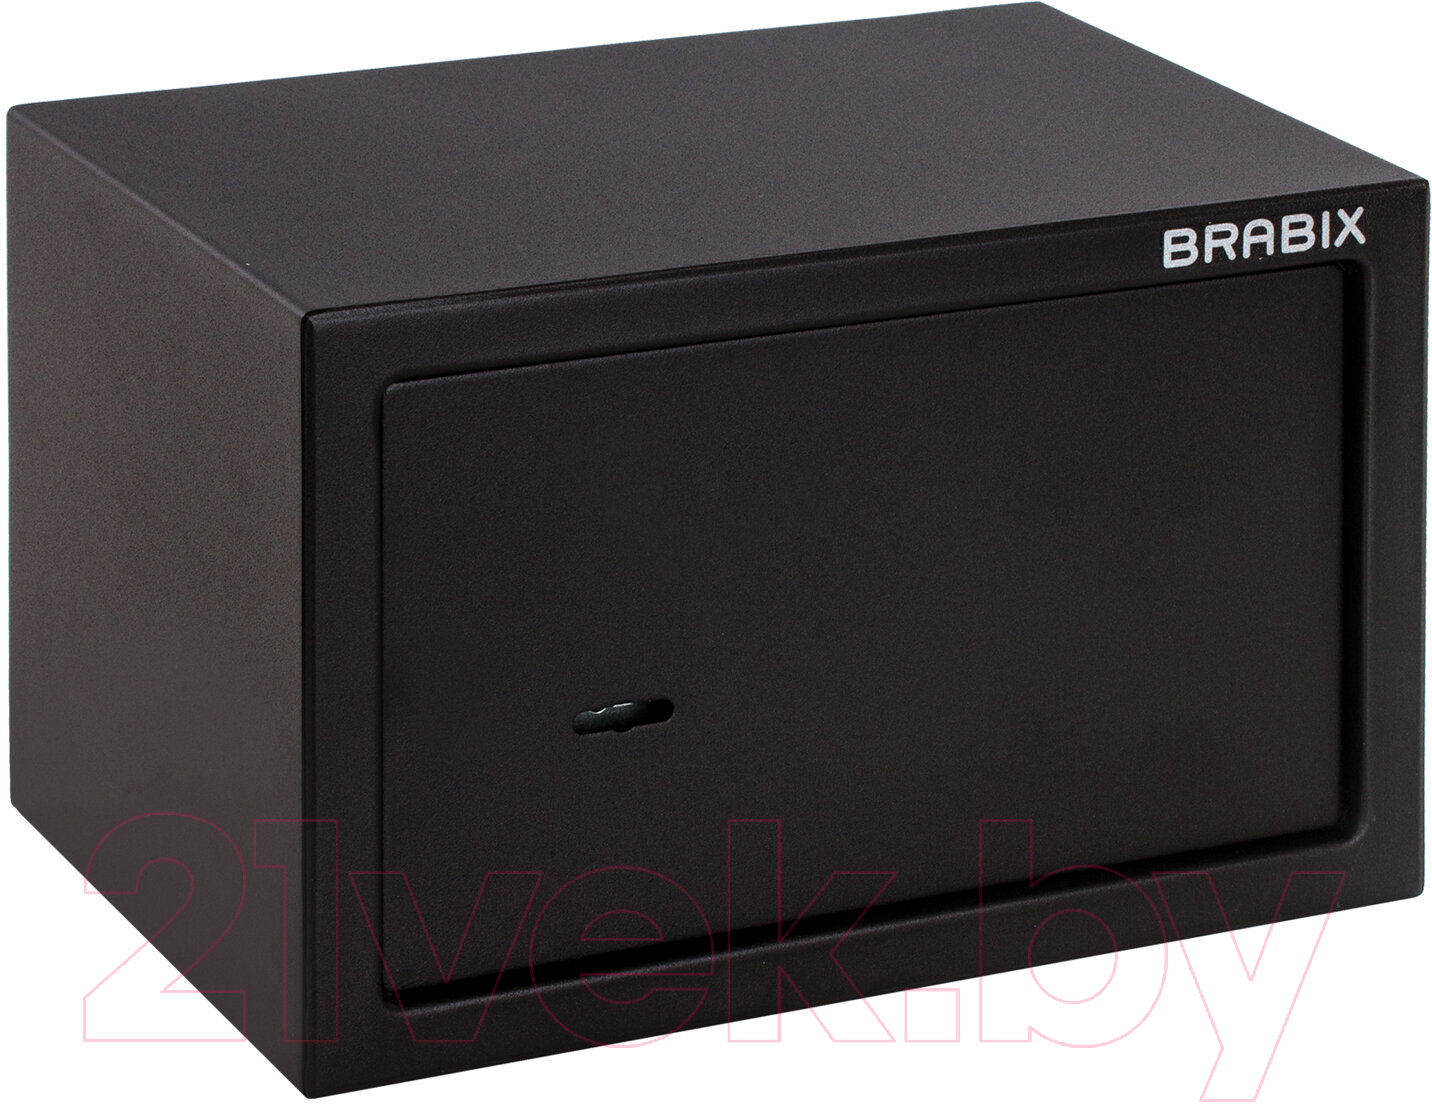 Мебельный сейф Brabix SF-200KL / 291144